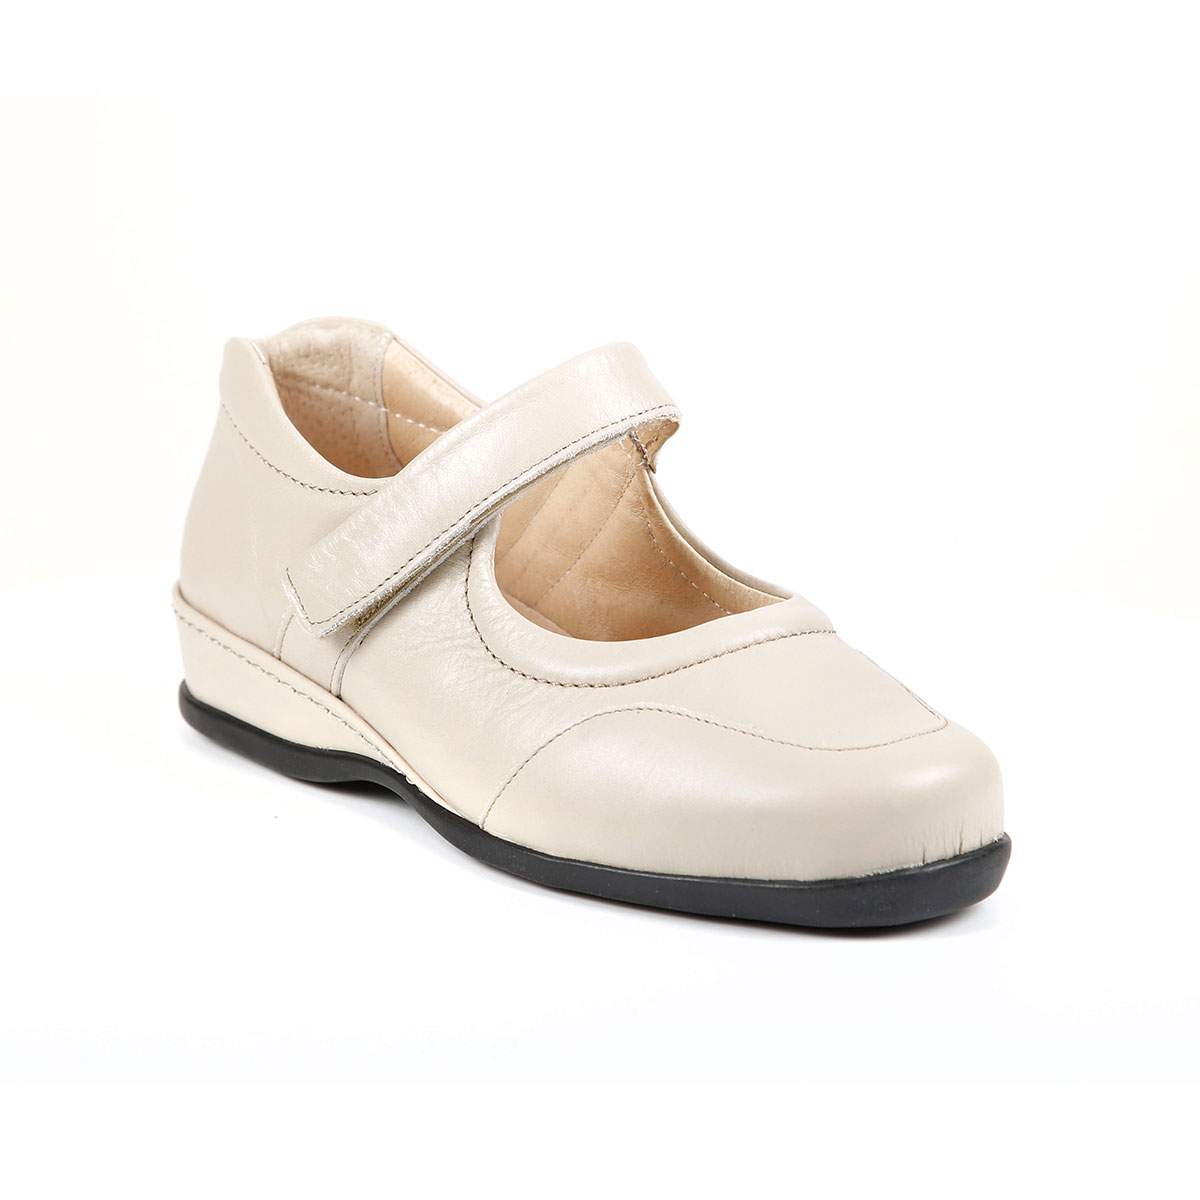 Stone (cream) Welton shoe